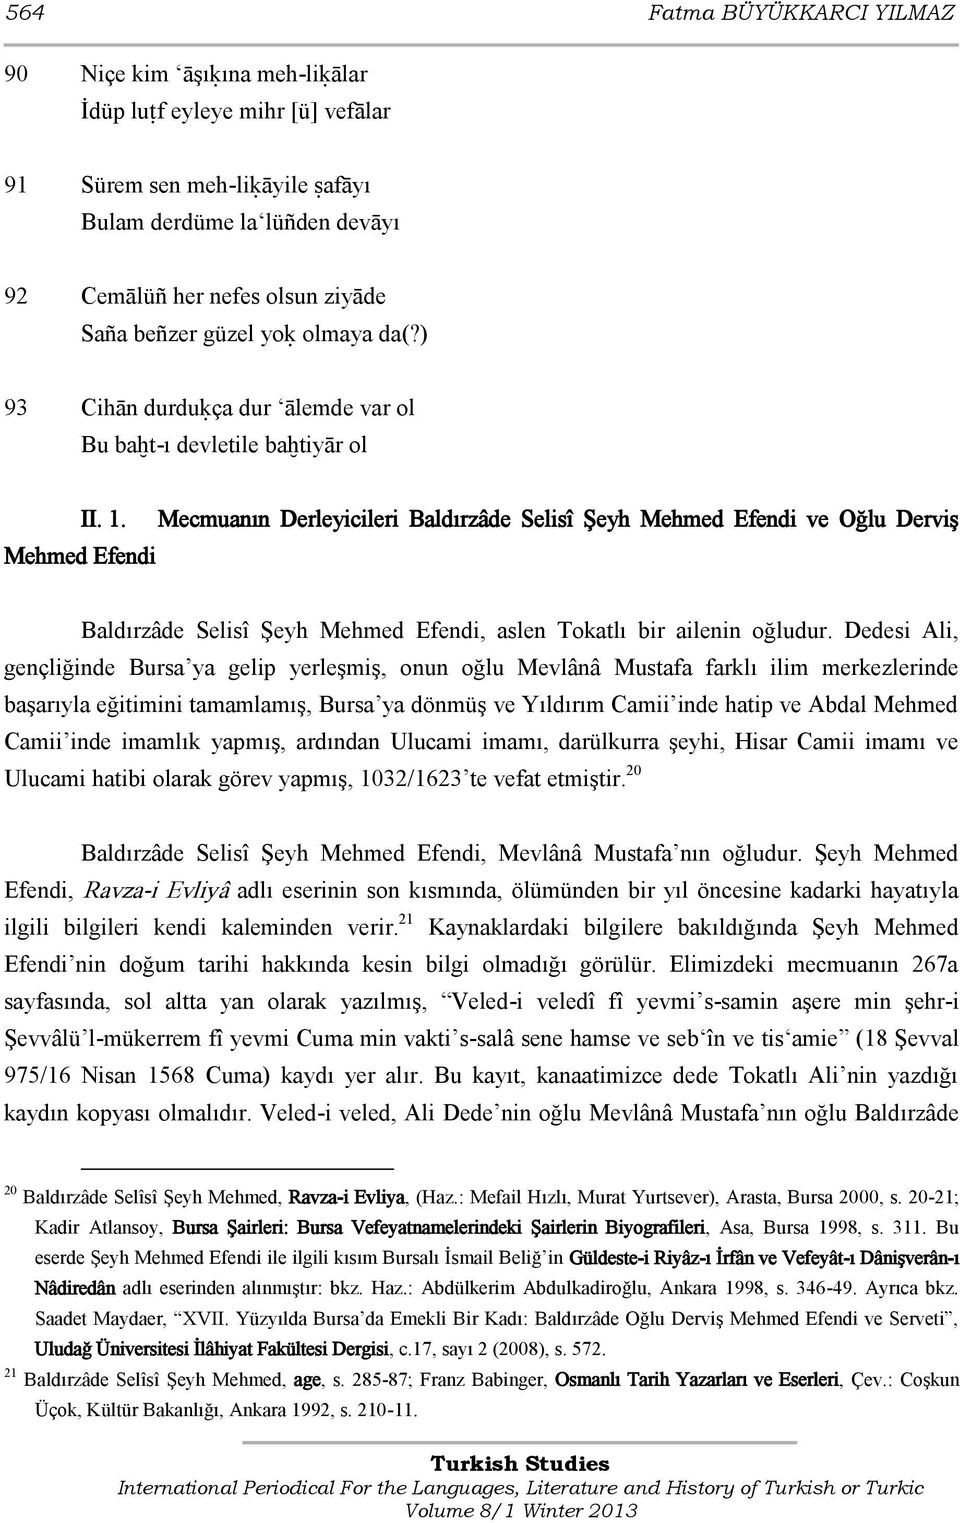 Mehmed Efendi Mecmuanın Derleyicileri Baldırzâde Selisî Şeyh Mehmed Efendi ve Oğlu Derviş Baldırzâde Selisî Şeyh Mehmed Efendi, aslen Tokatlı bir ailenin oğludur.